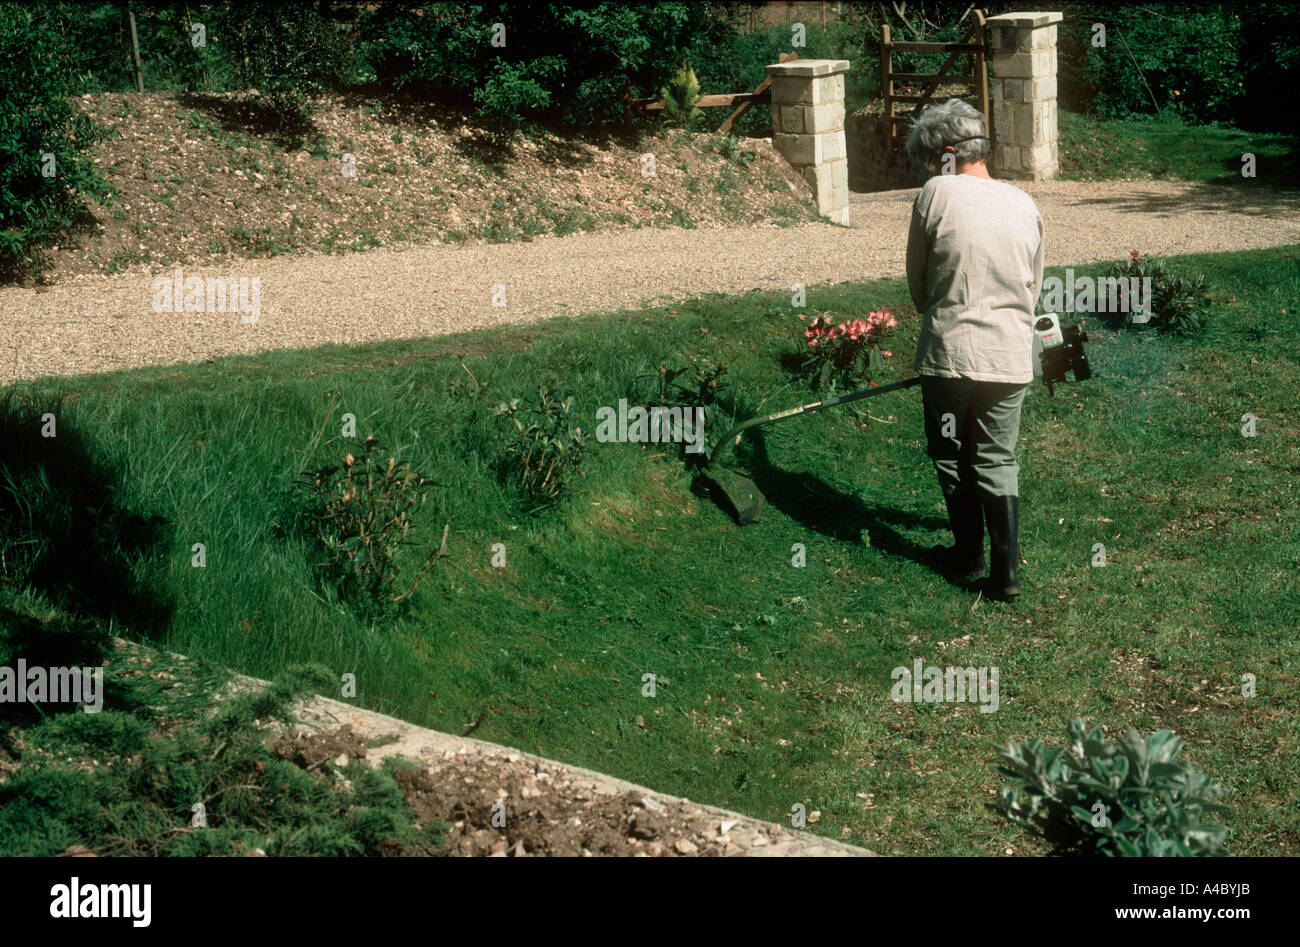 Femme strimming bords de pelouse dans le jardin Banque D'Images